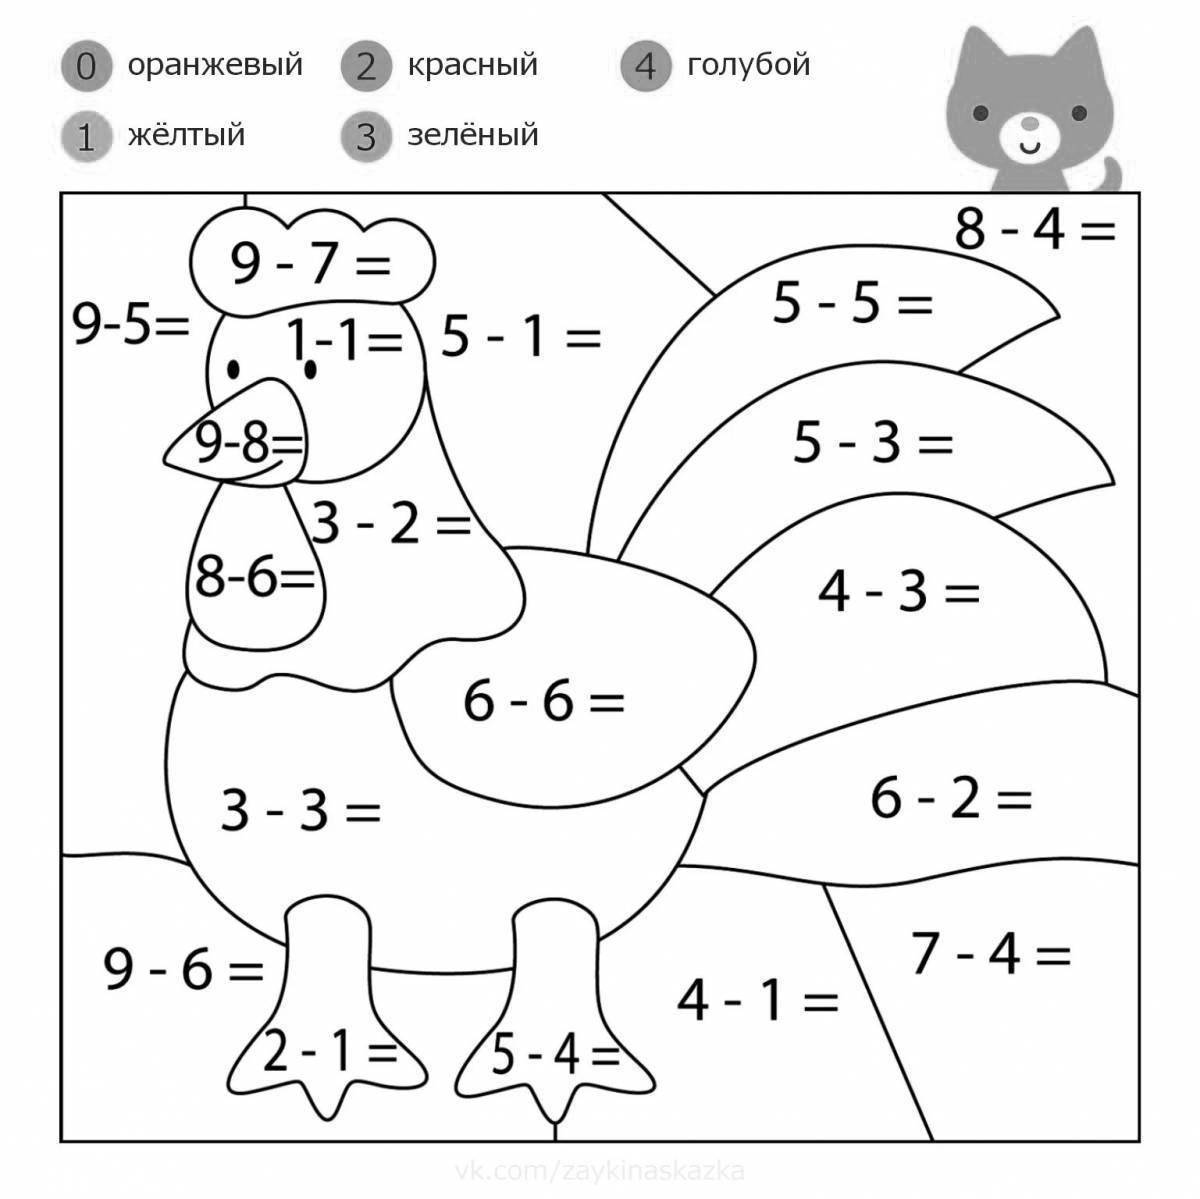 Интересная математическая раскраска для детей 6-7 лет